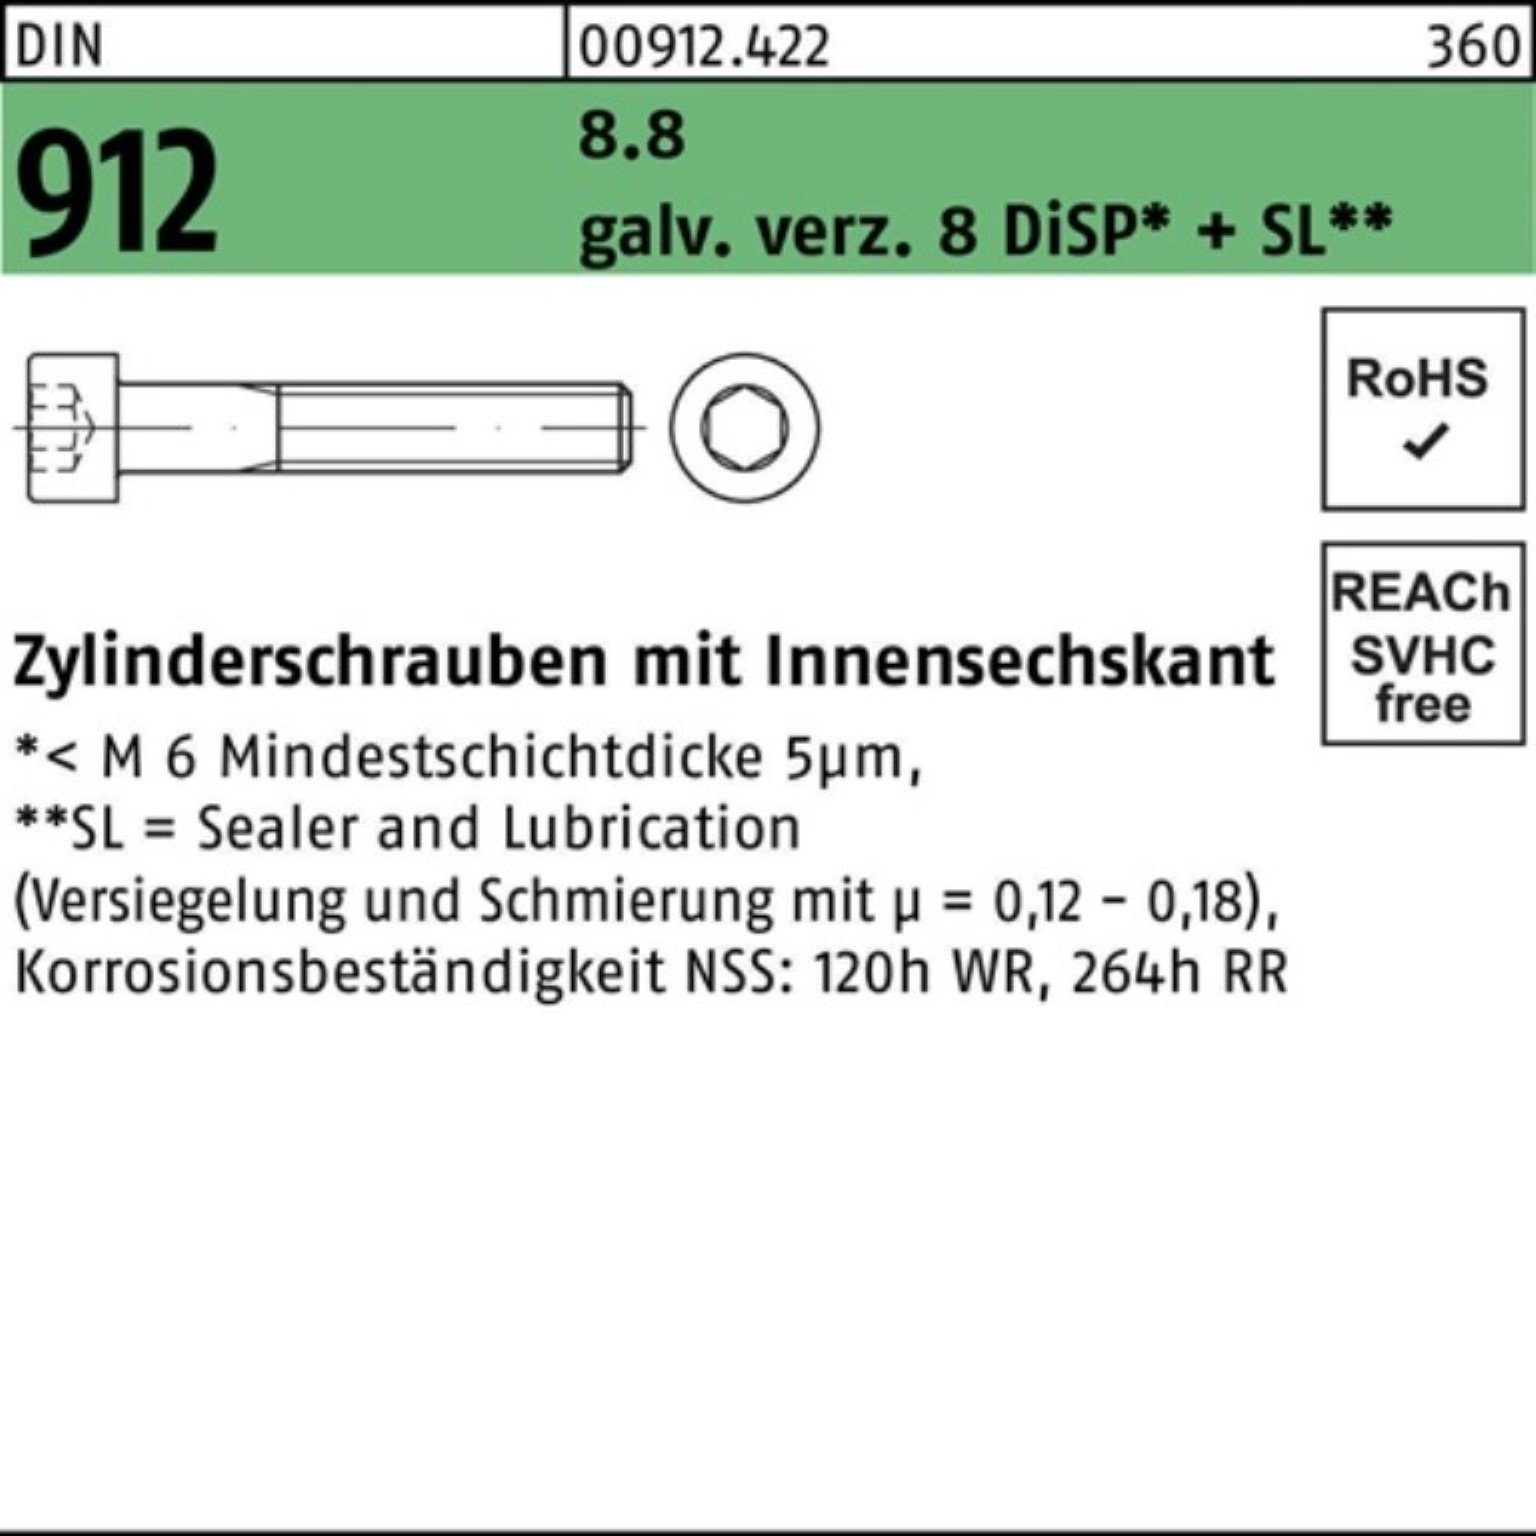 Innen-6kt DIN M4x 500er Reyher Pack + DiSP 912 Zn Zylinderschraube 10 8.8 gal Zylinderschraube